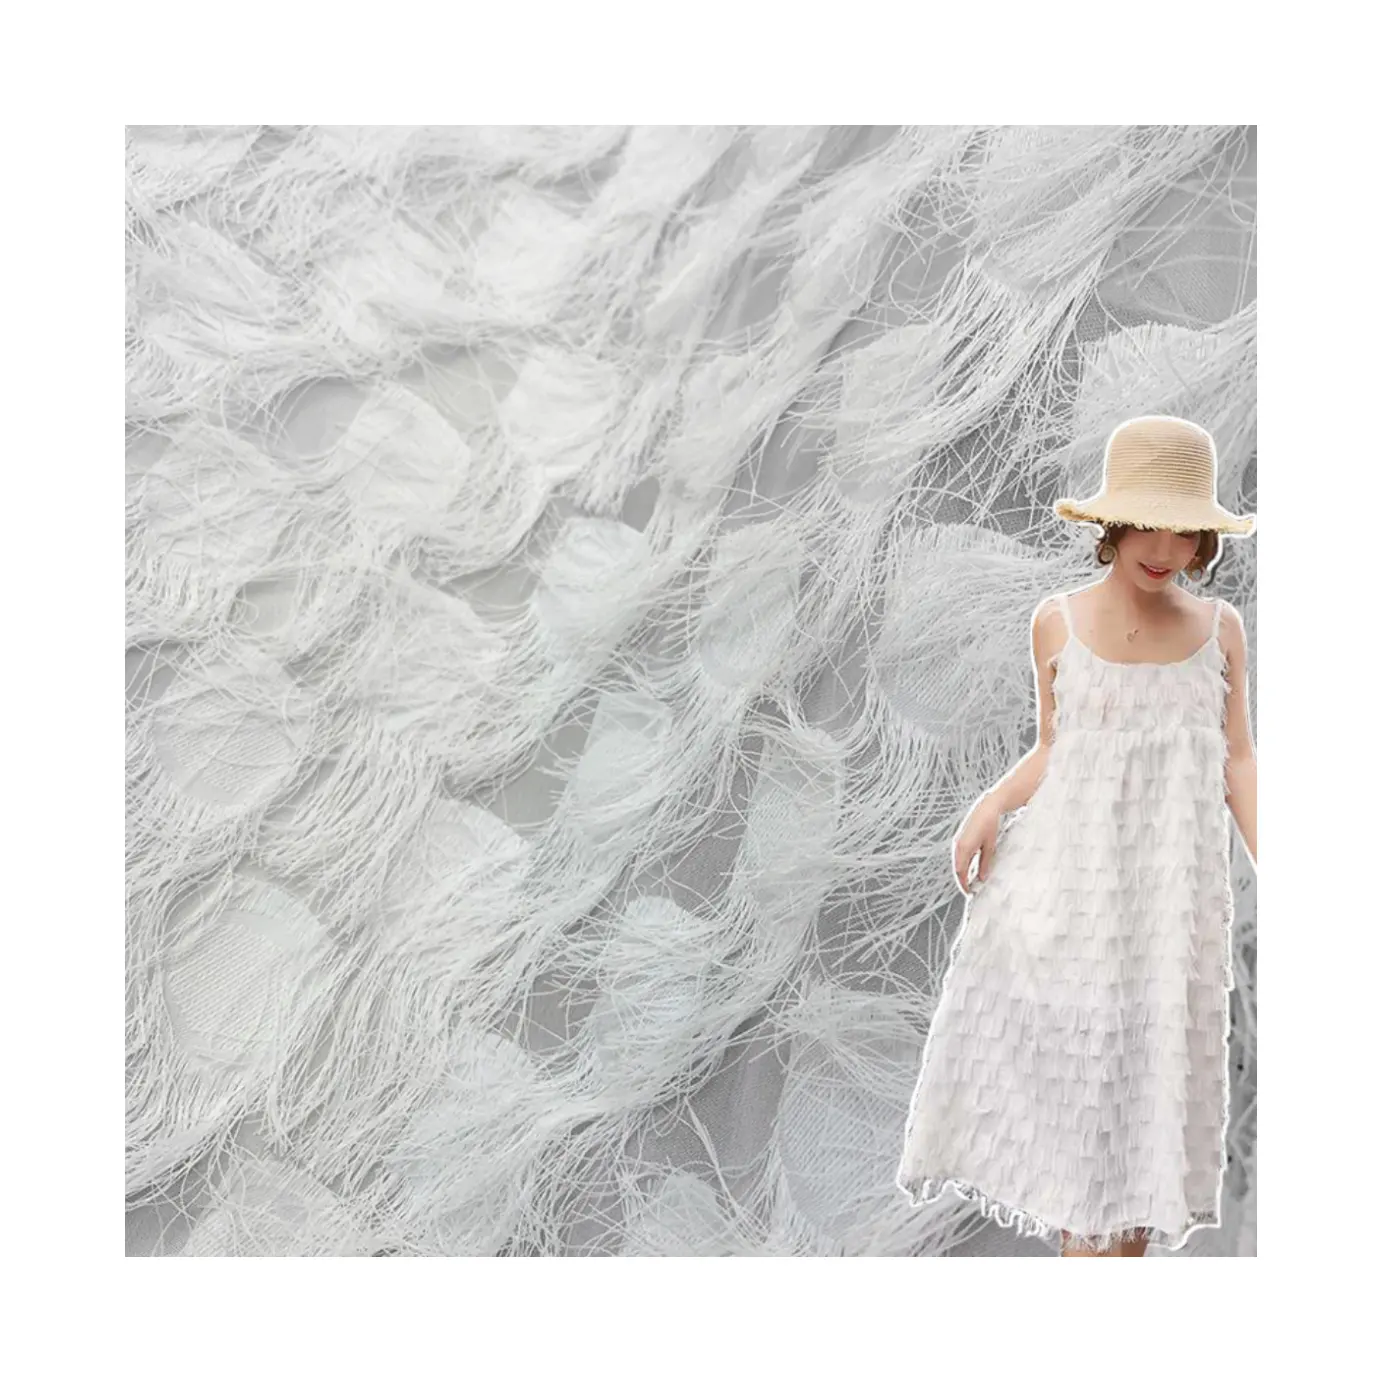 Textil 100% Polyester gewebt 3D lange Feder Regentropfen Muster Kleider Garne schneiden Blume Chiffon Stoff für Kleid